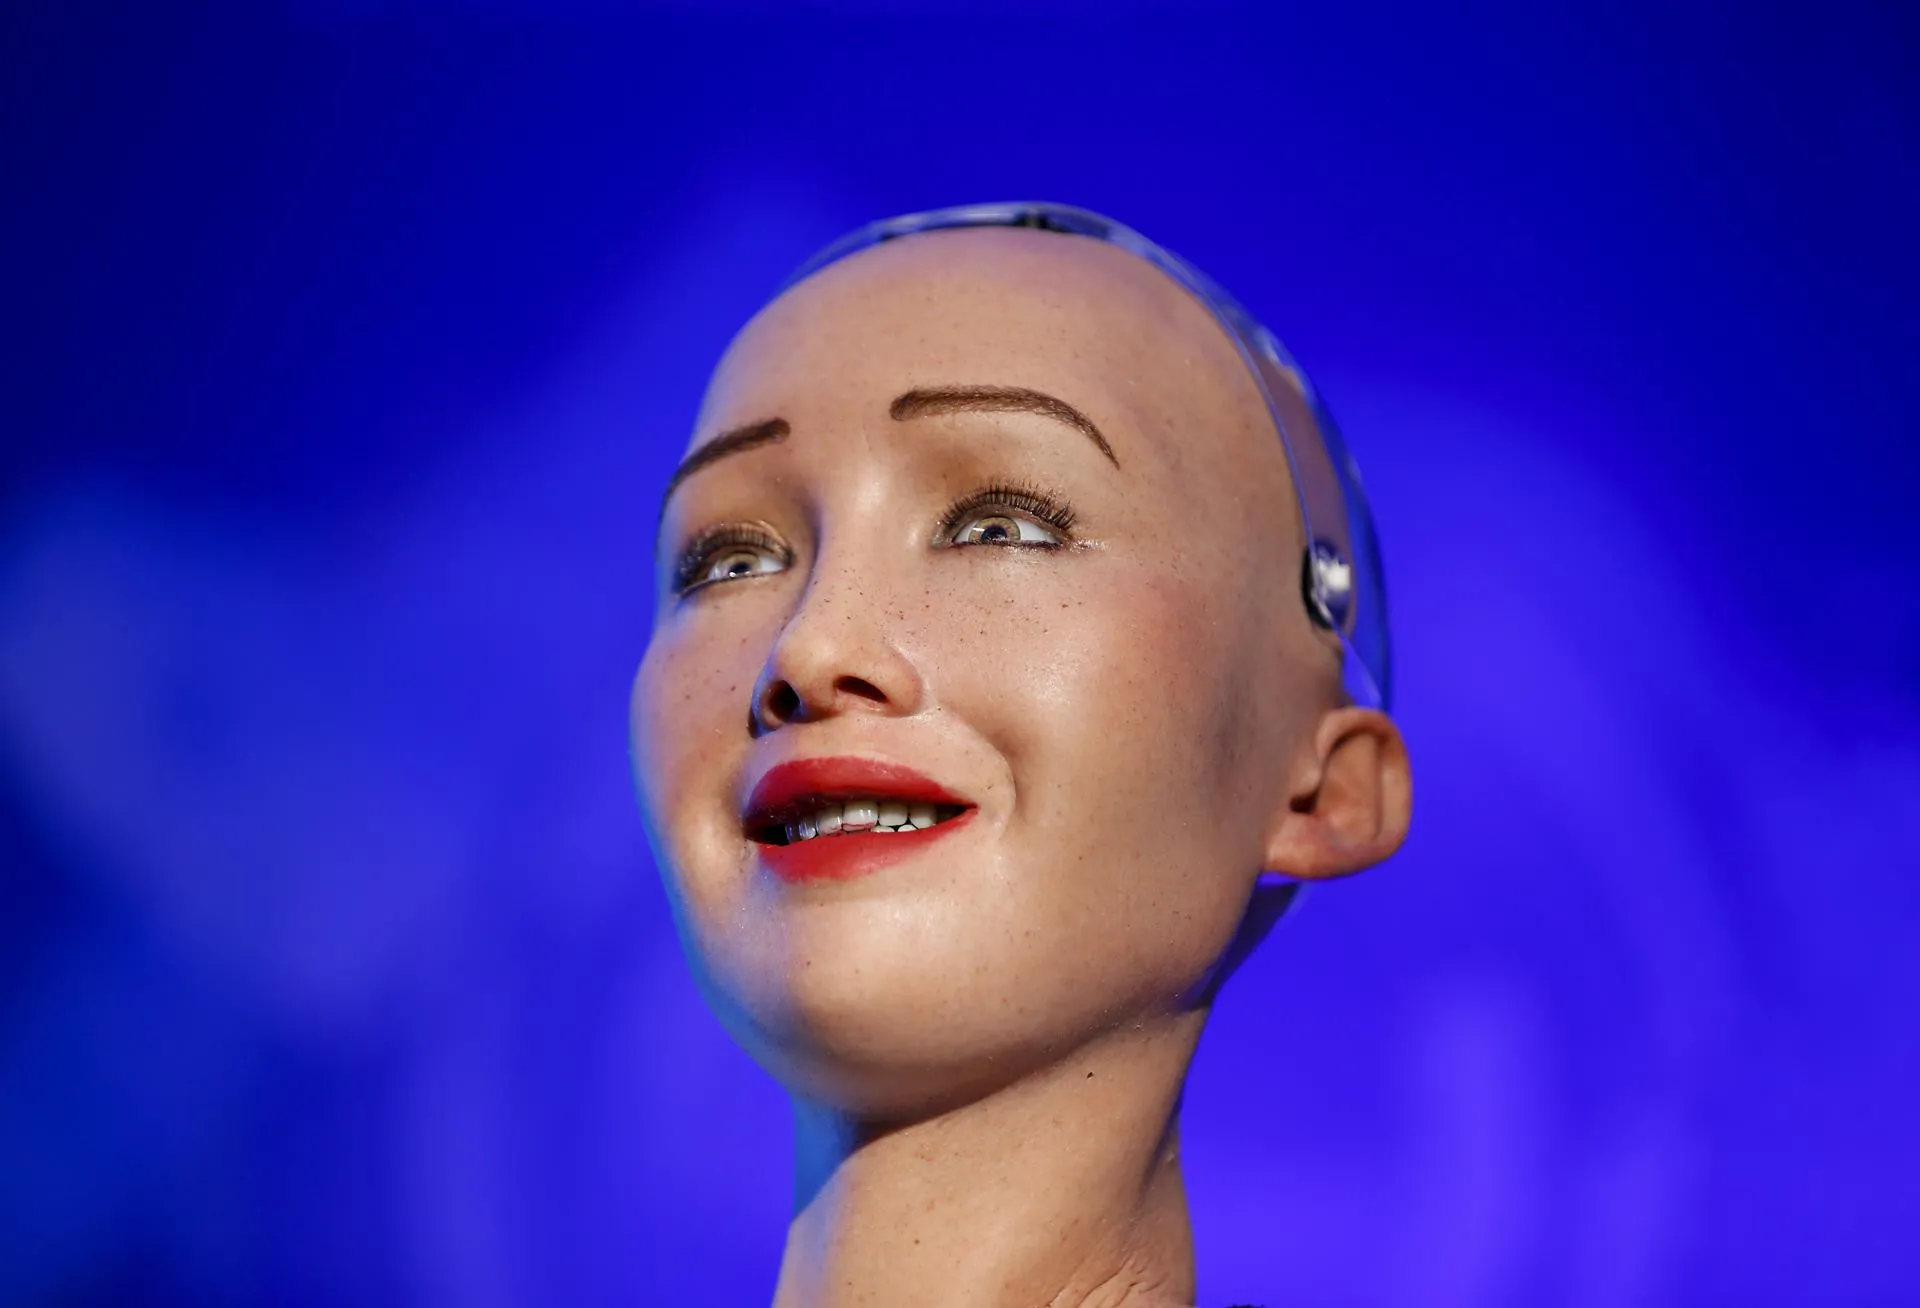 Para entender a Sophia robot sin ser Alan Turing